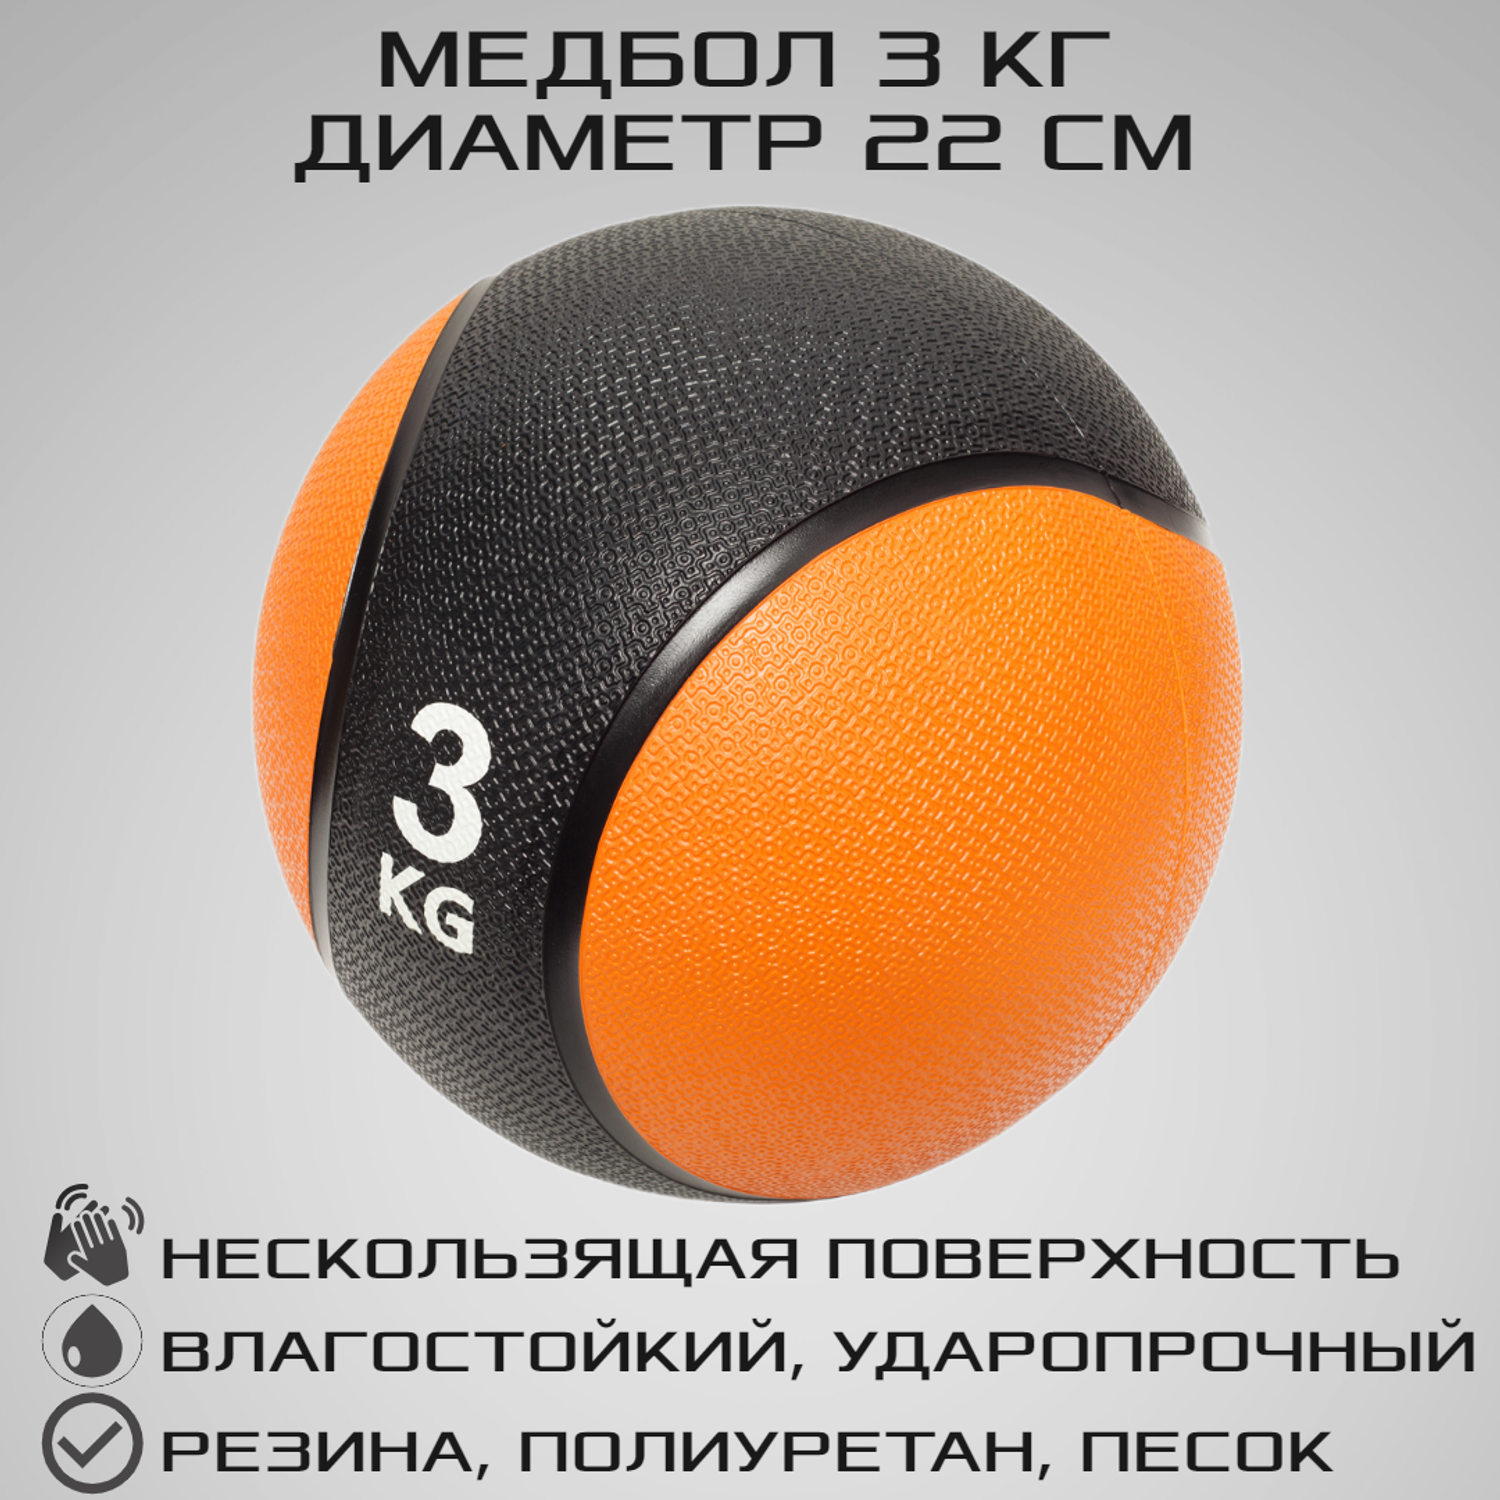 Медбол STRONG BODY медицинский мяч для фитнеса черно-оранжевый 3 кг - фото 1